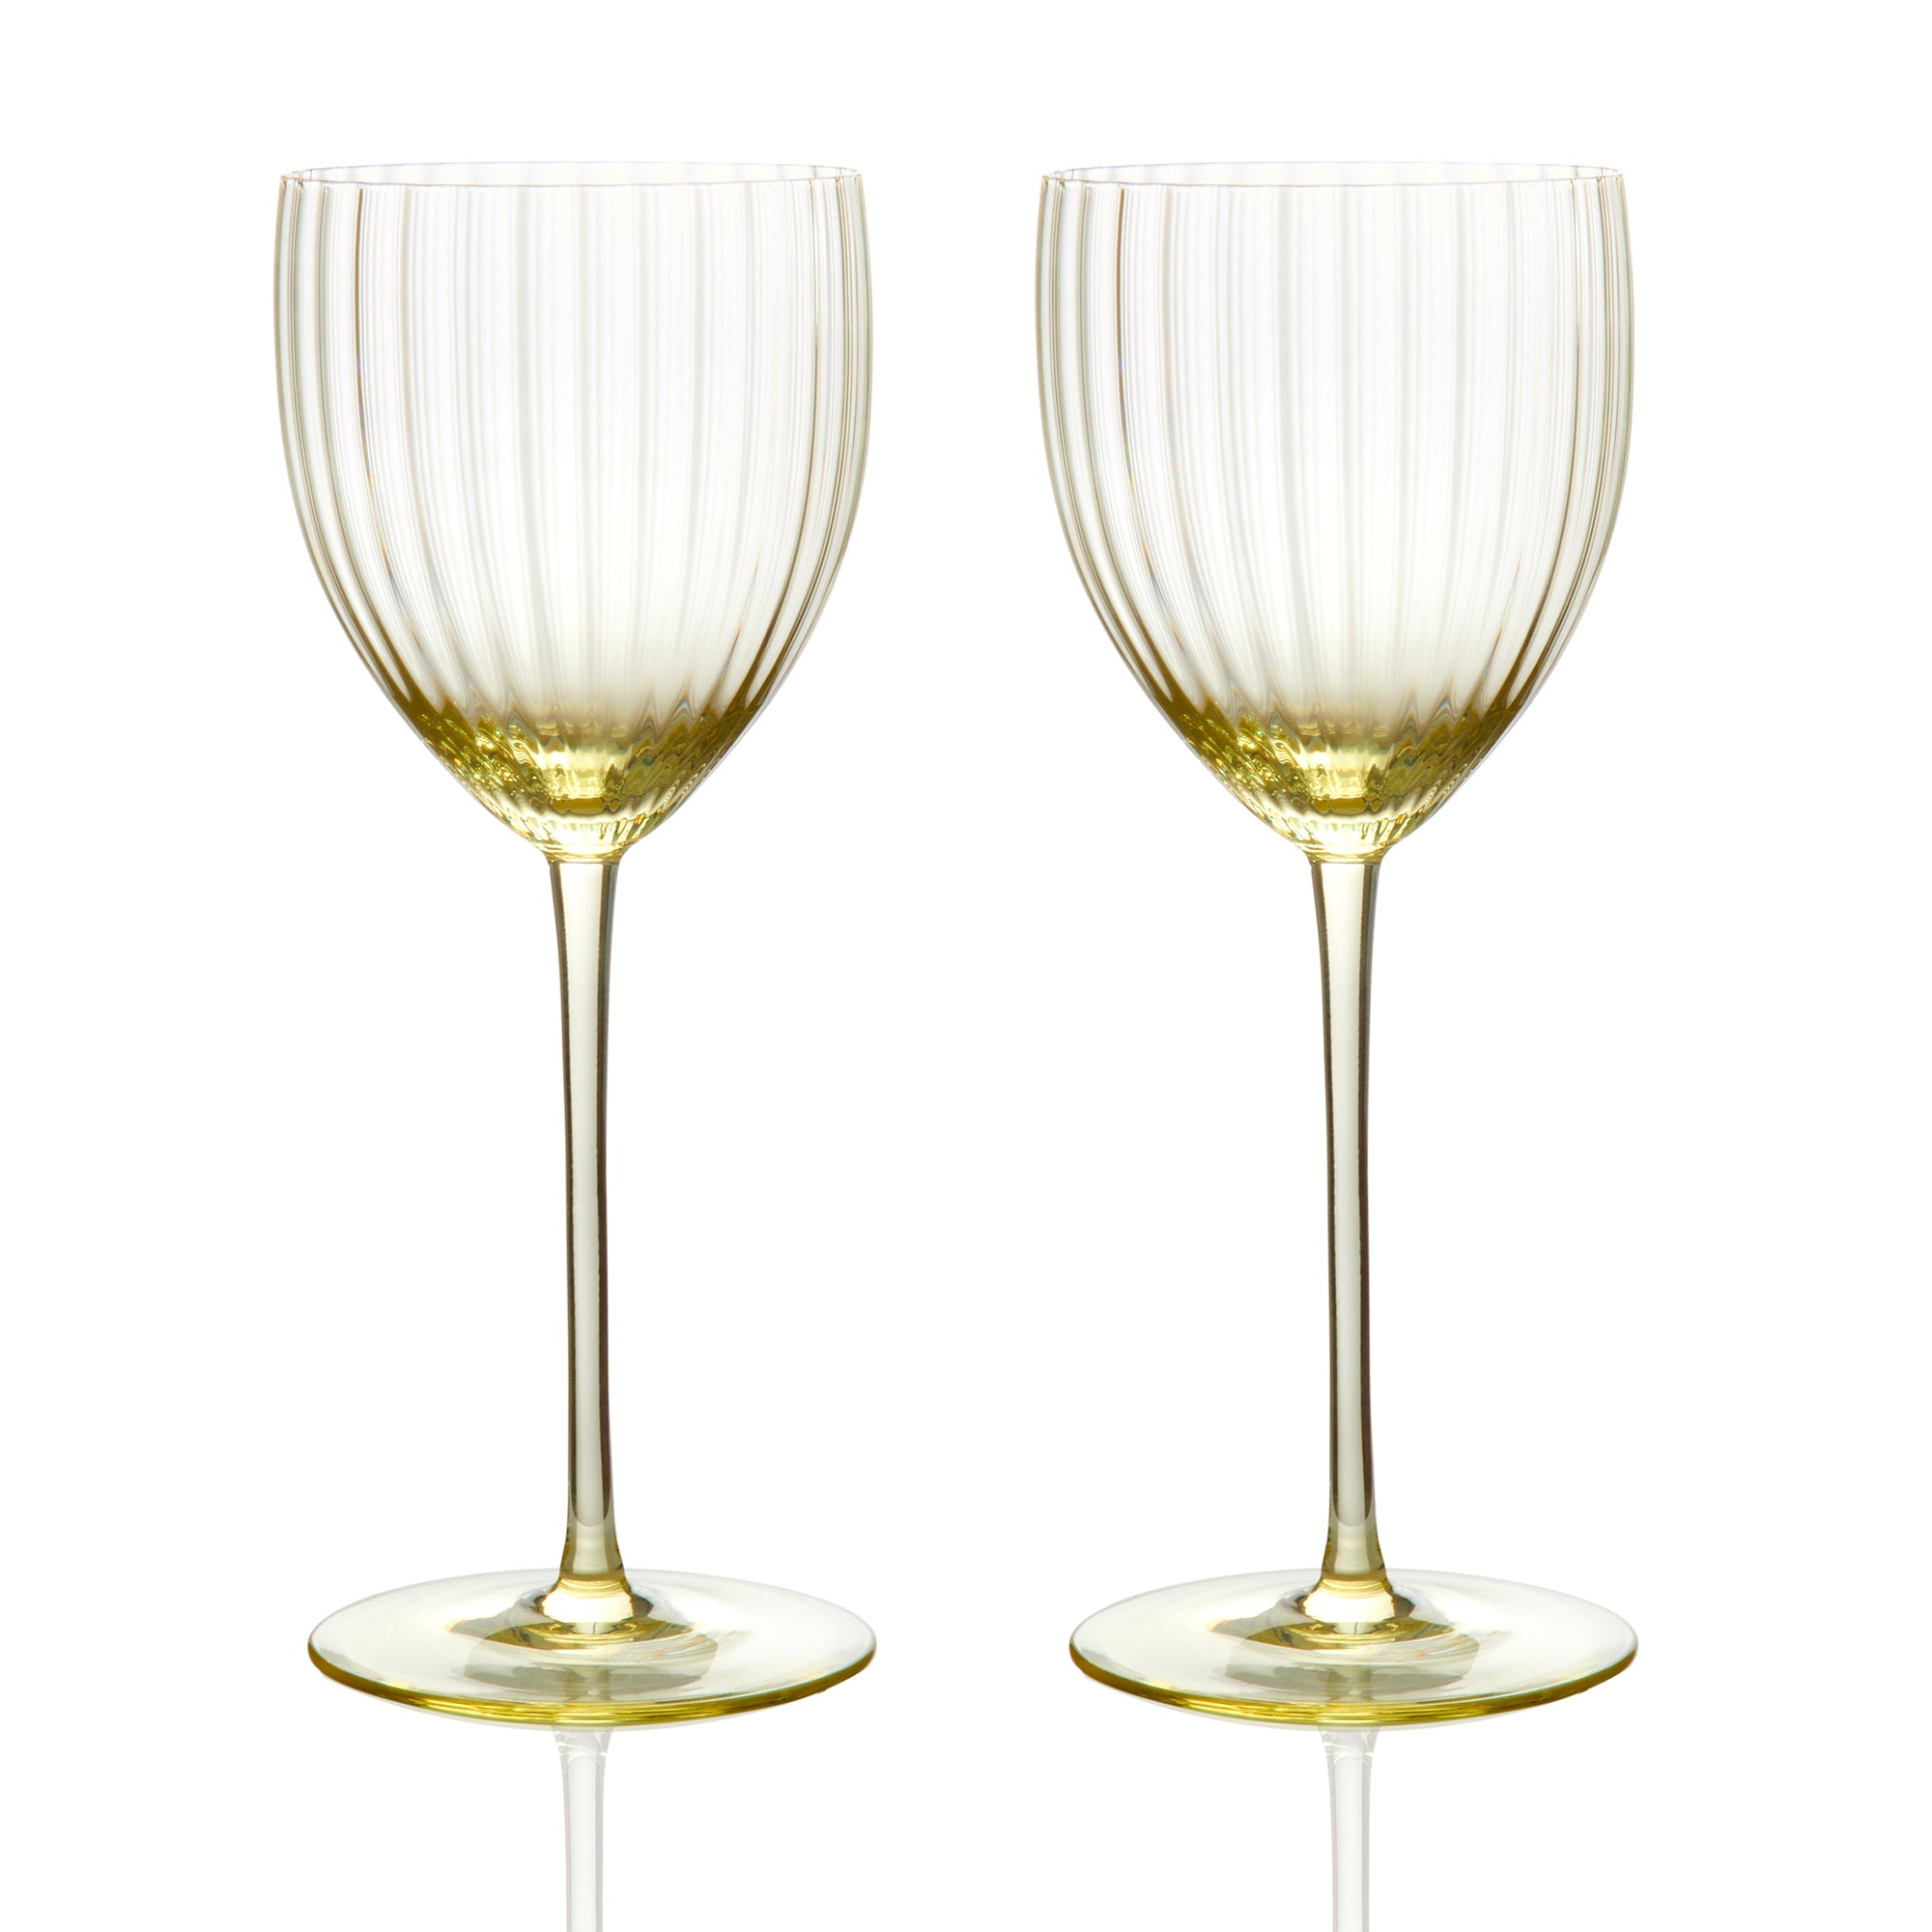 Quinn Citrine Yellow White Wine Crystal Glasses Set of 2 from Caskata